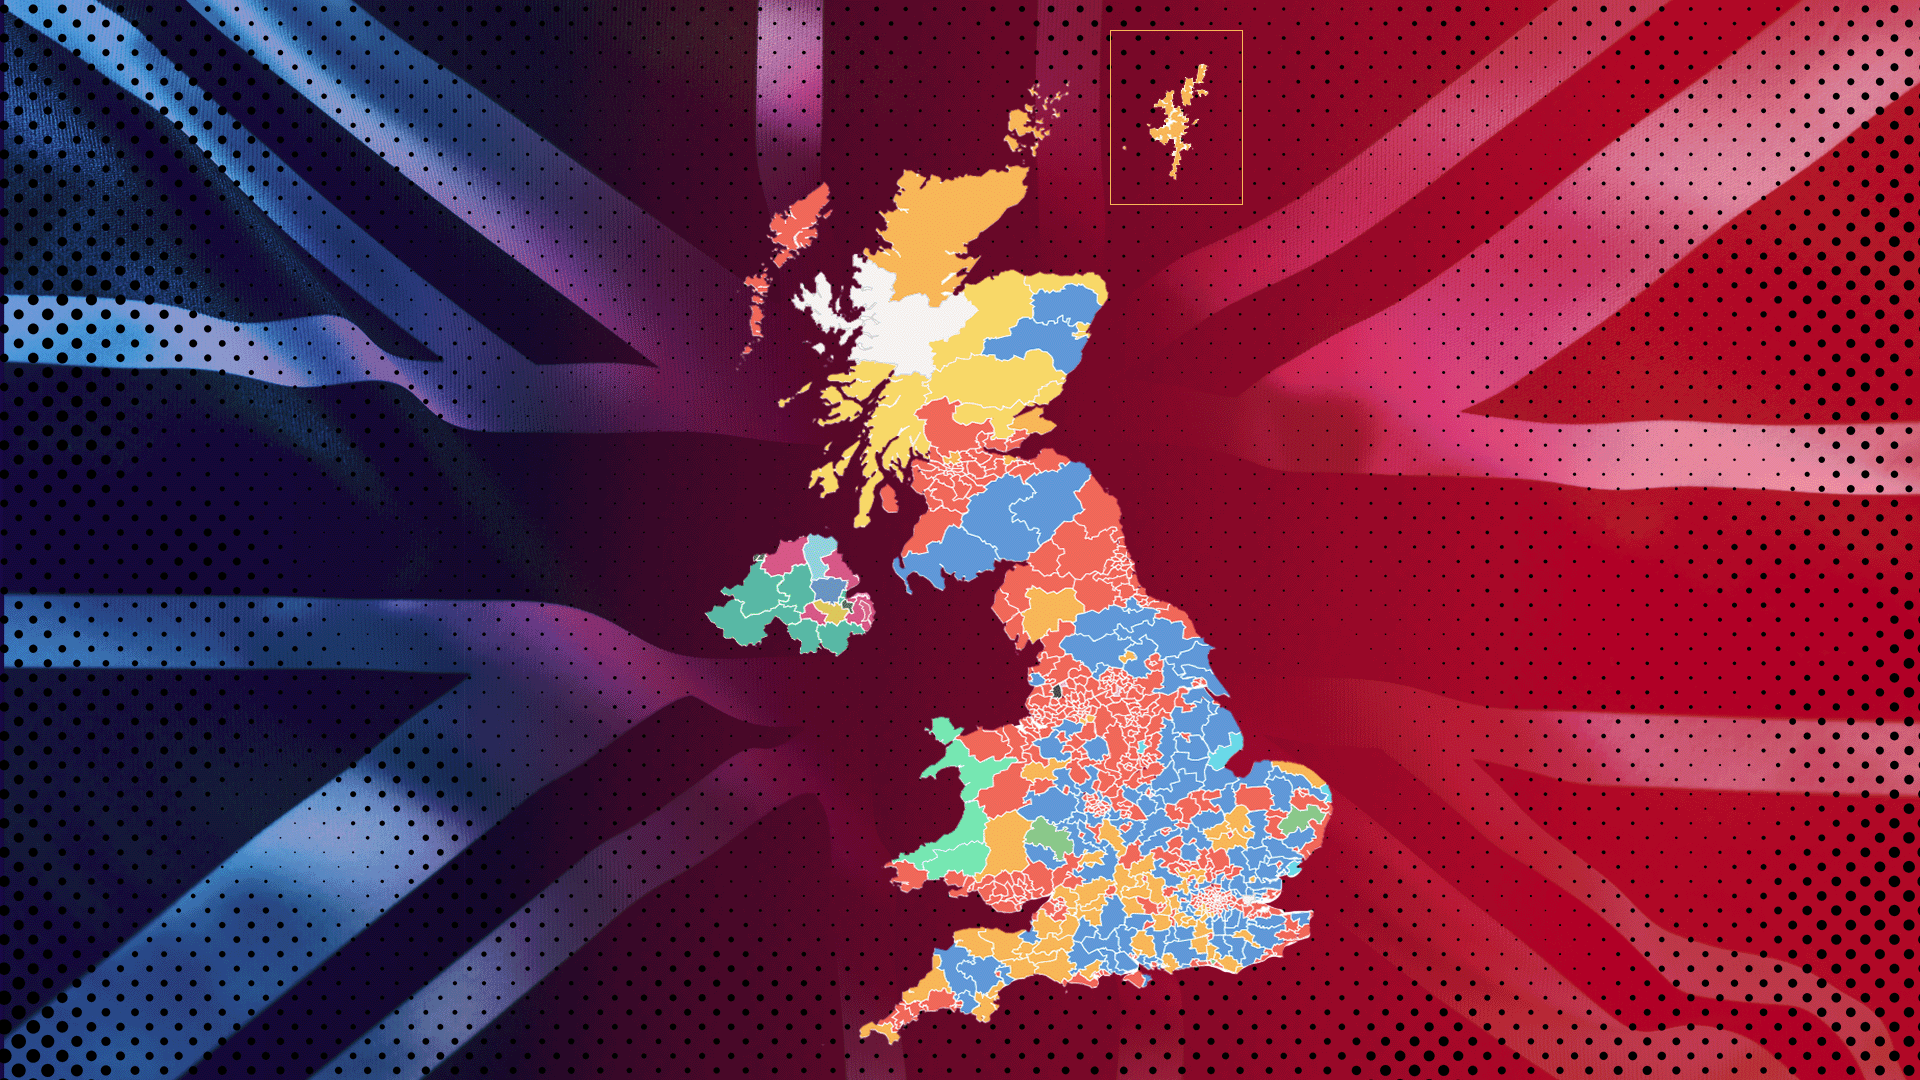 Composición del mapa de Reino Unido con los resultados electorales y la bandera de Reino Unido de fondo. 